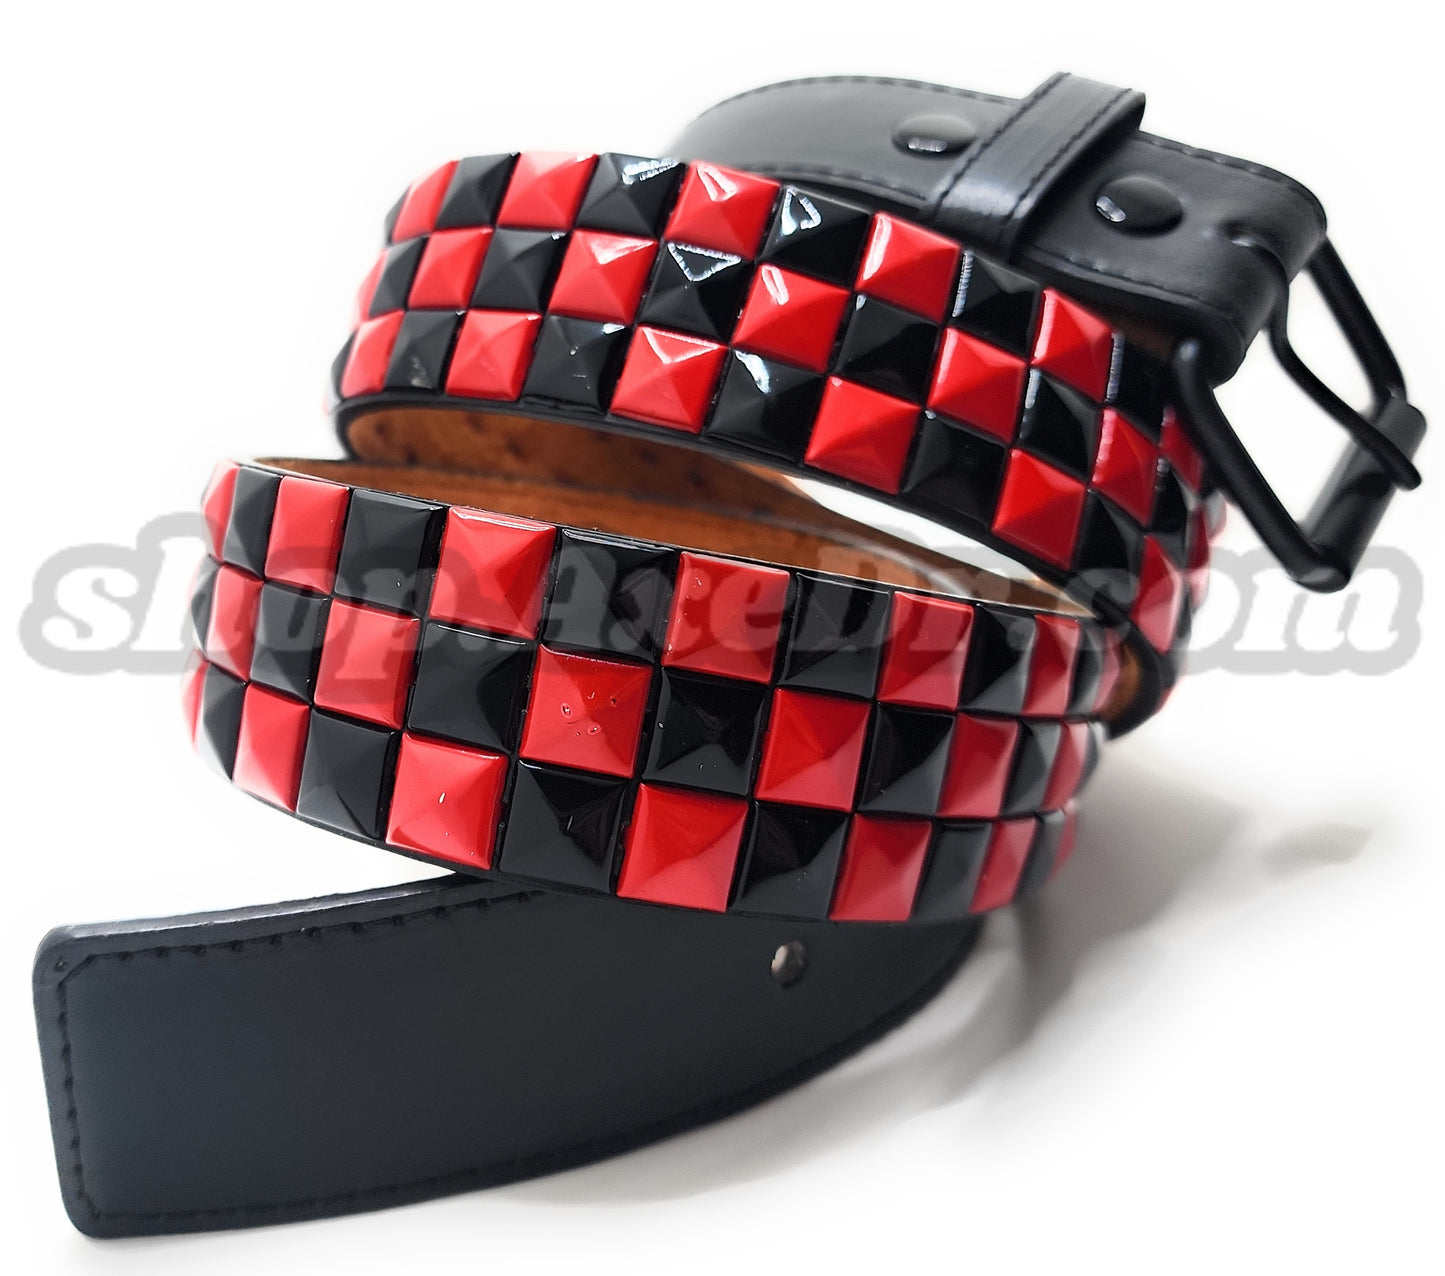 Punk cinturón de cuero con tachuelas de pirámide morada y negra